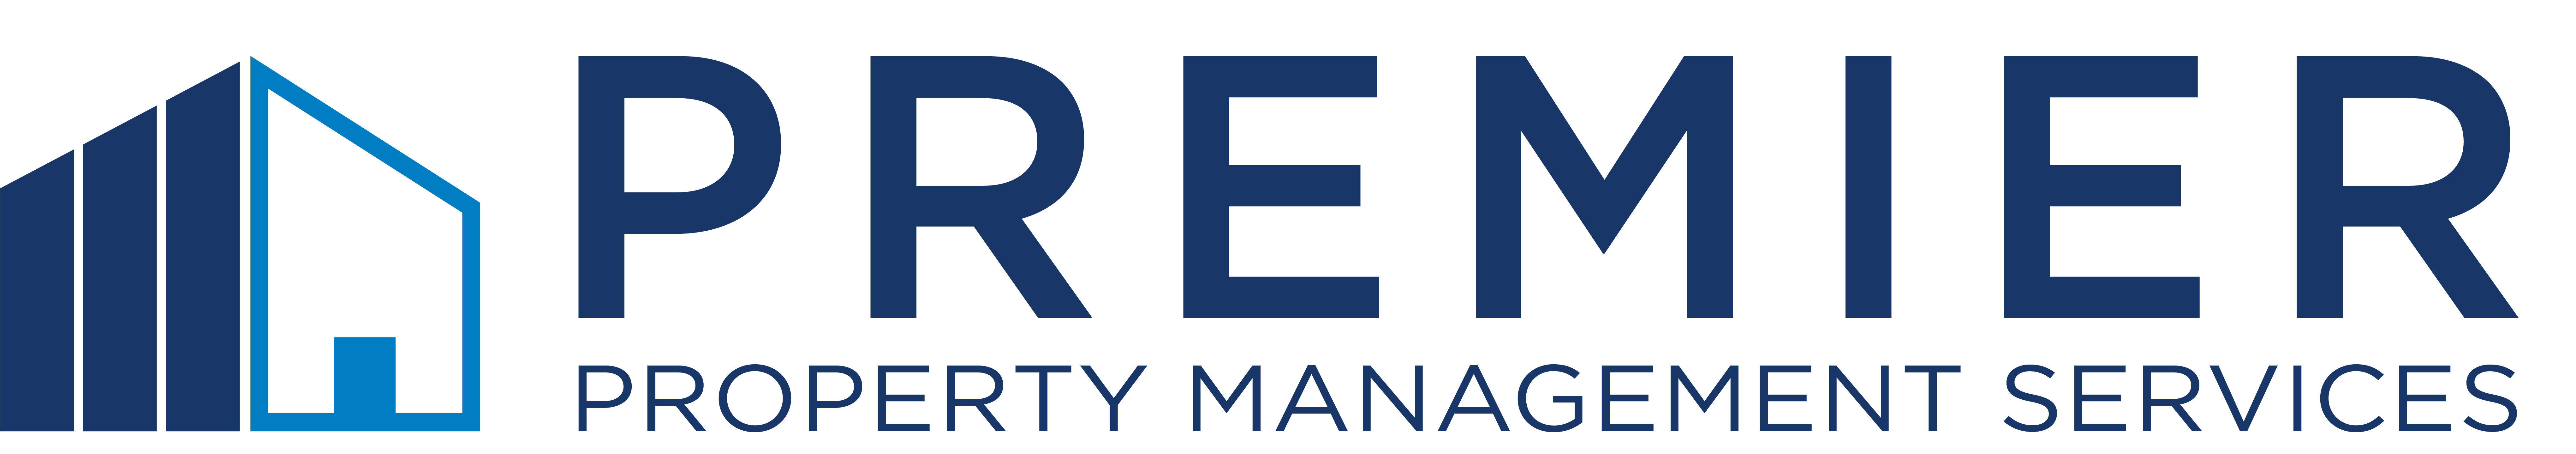 Premier Property Management Services